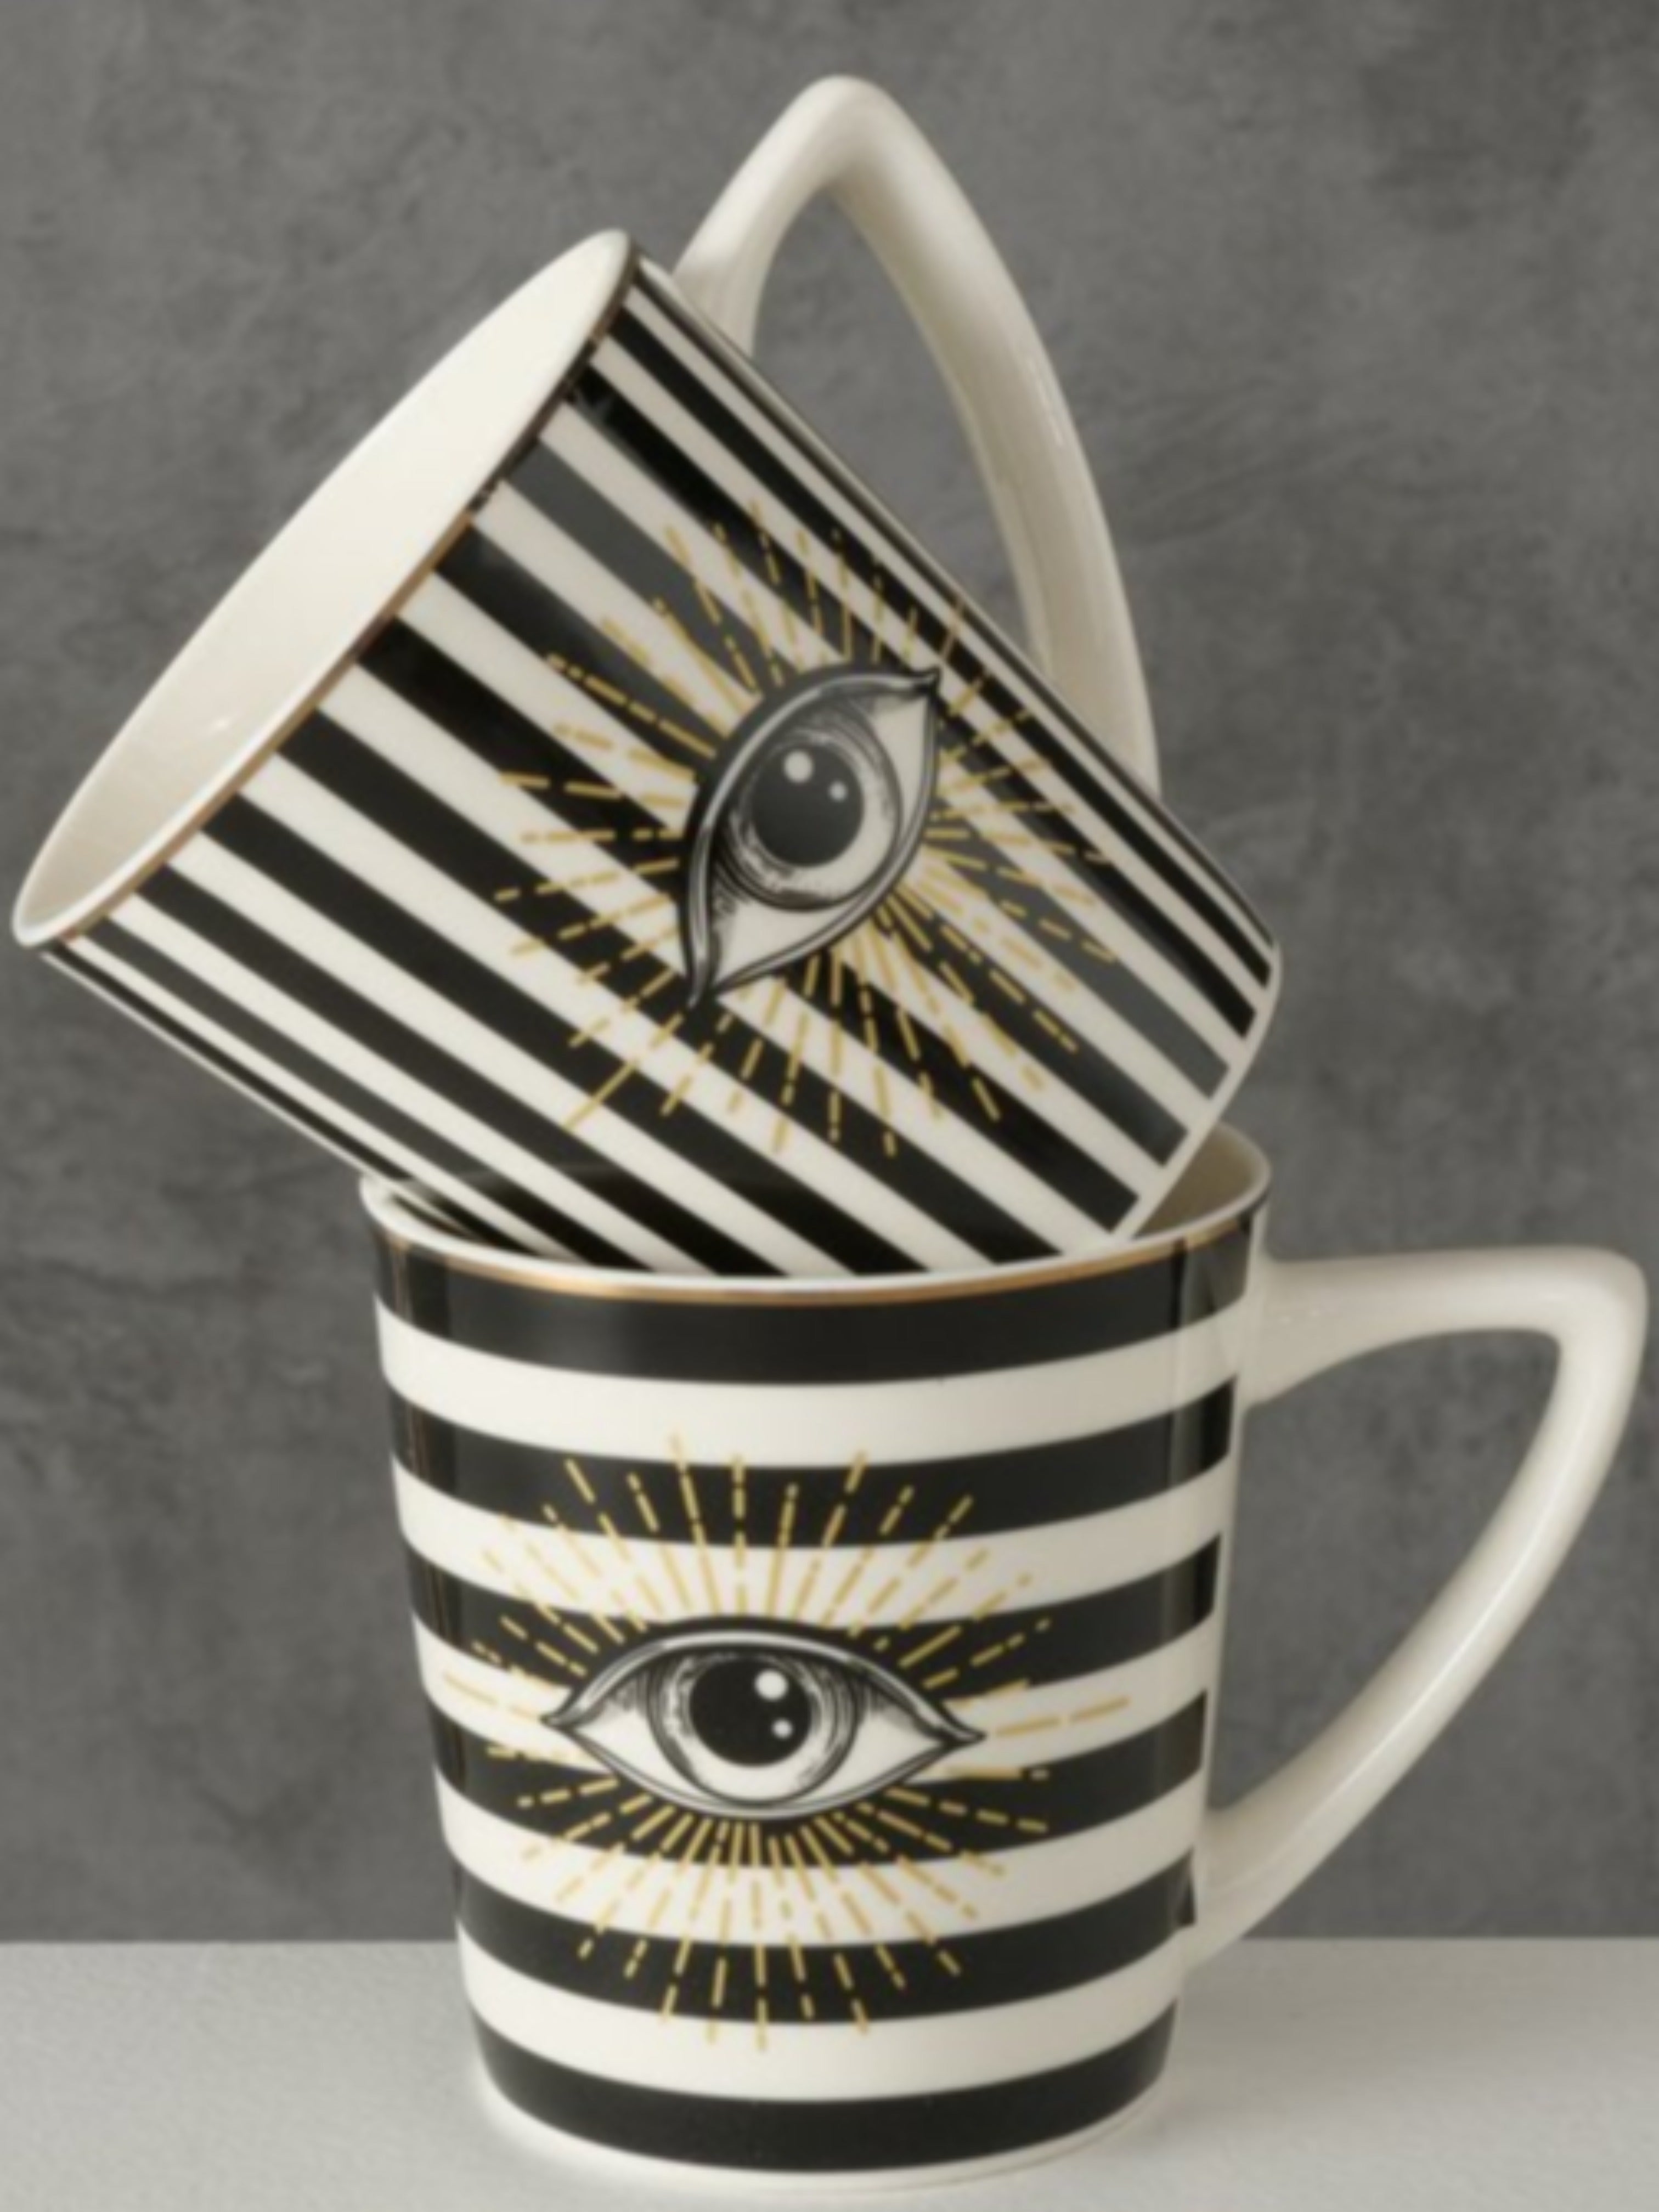 Horizontal Striped Eye Motif Mug